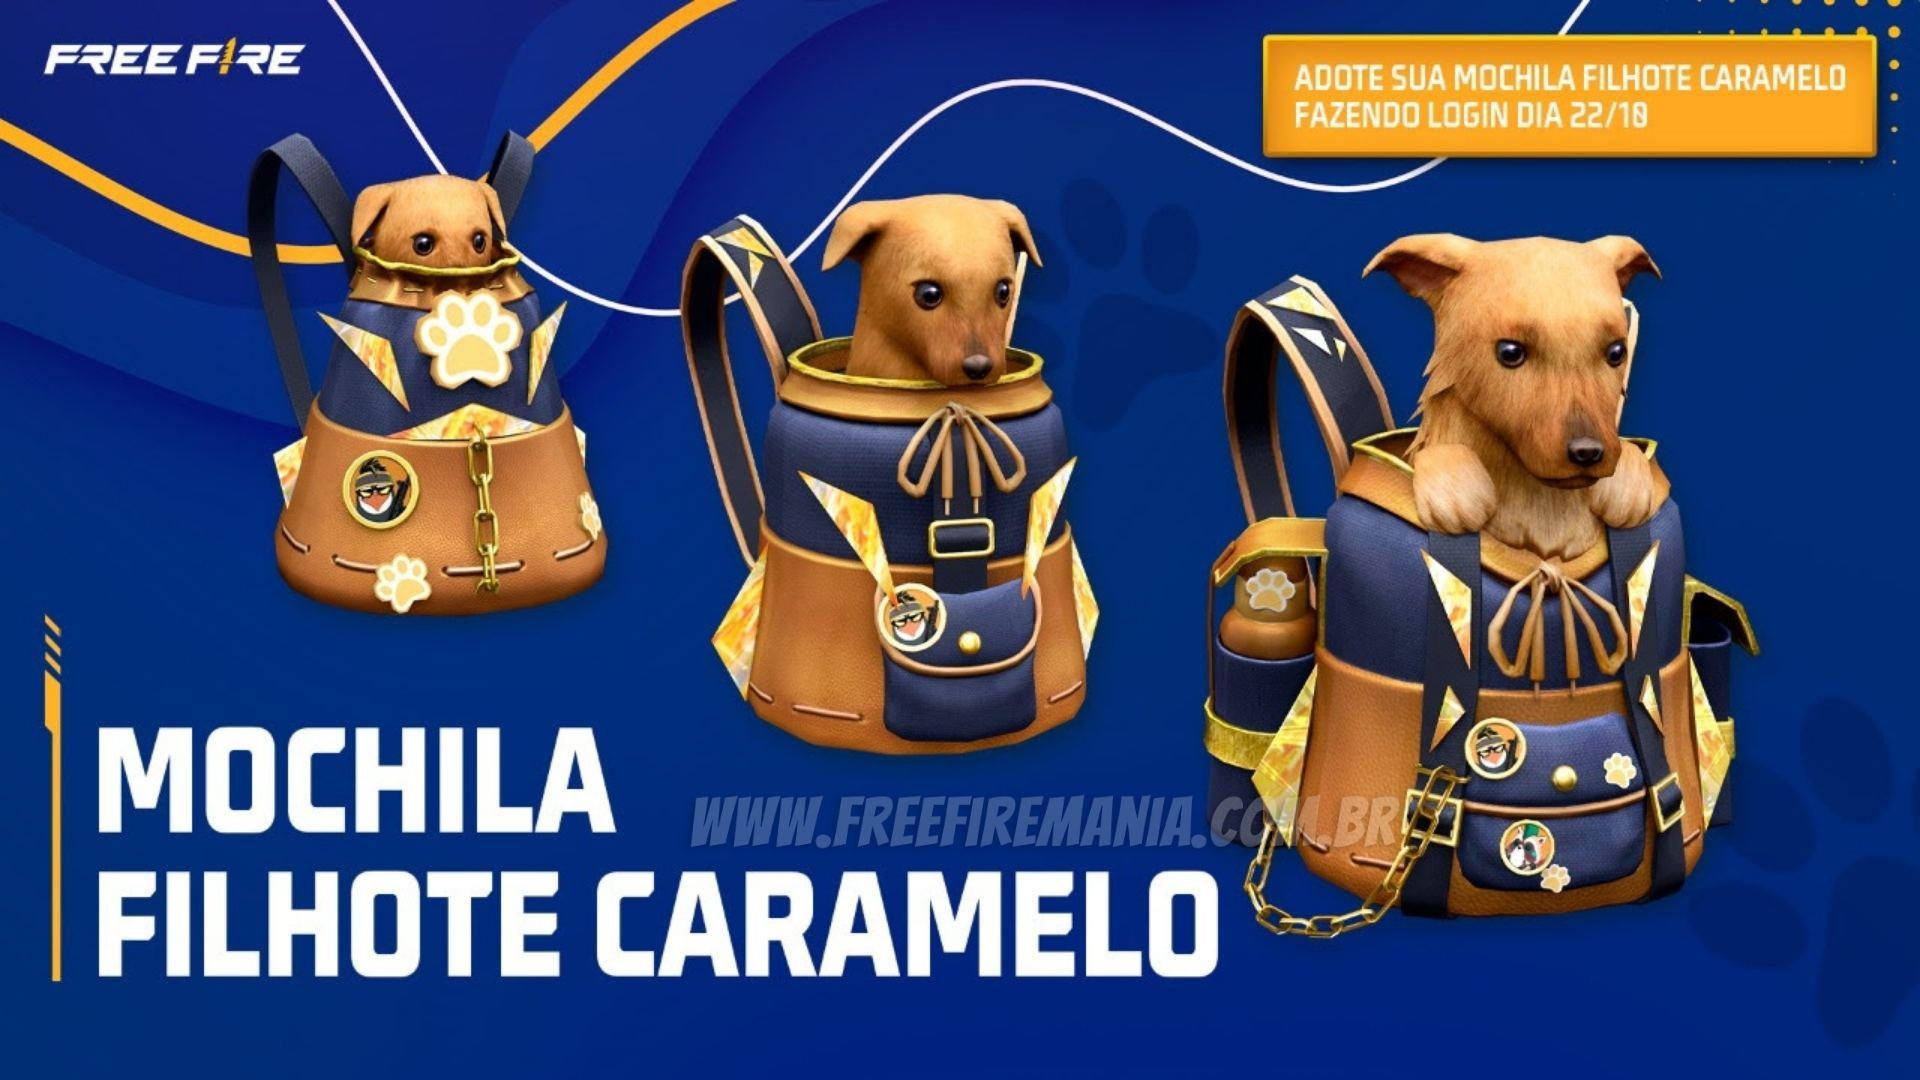 En forma de mochila, un nuevo artículo de "Cachorro Caramelo" trae más brasilidad a Free Fire